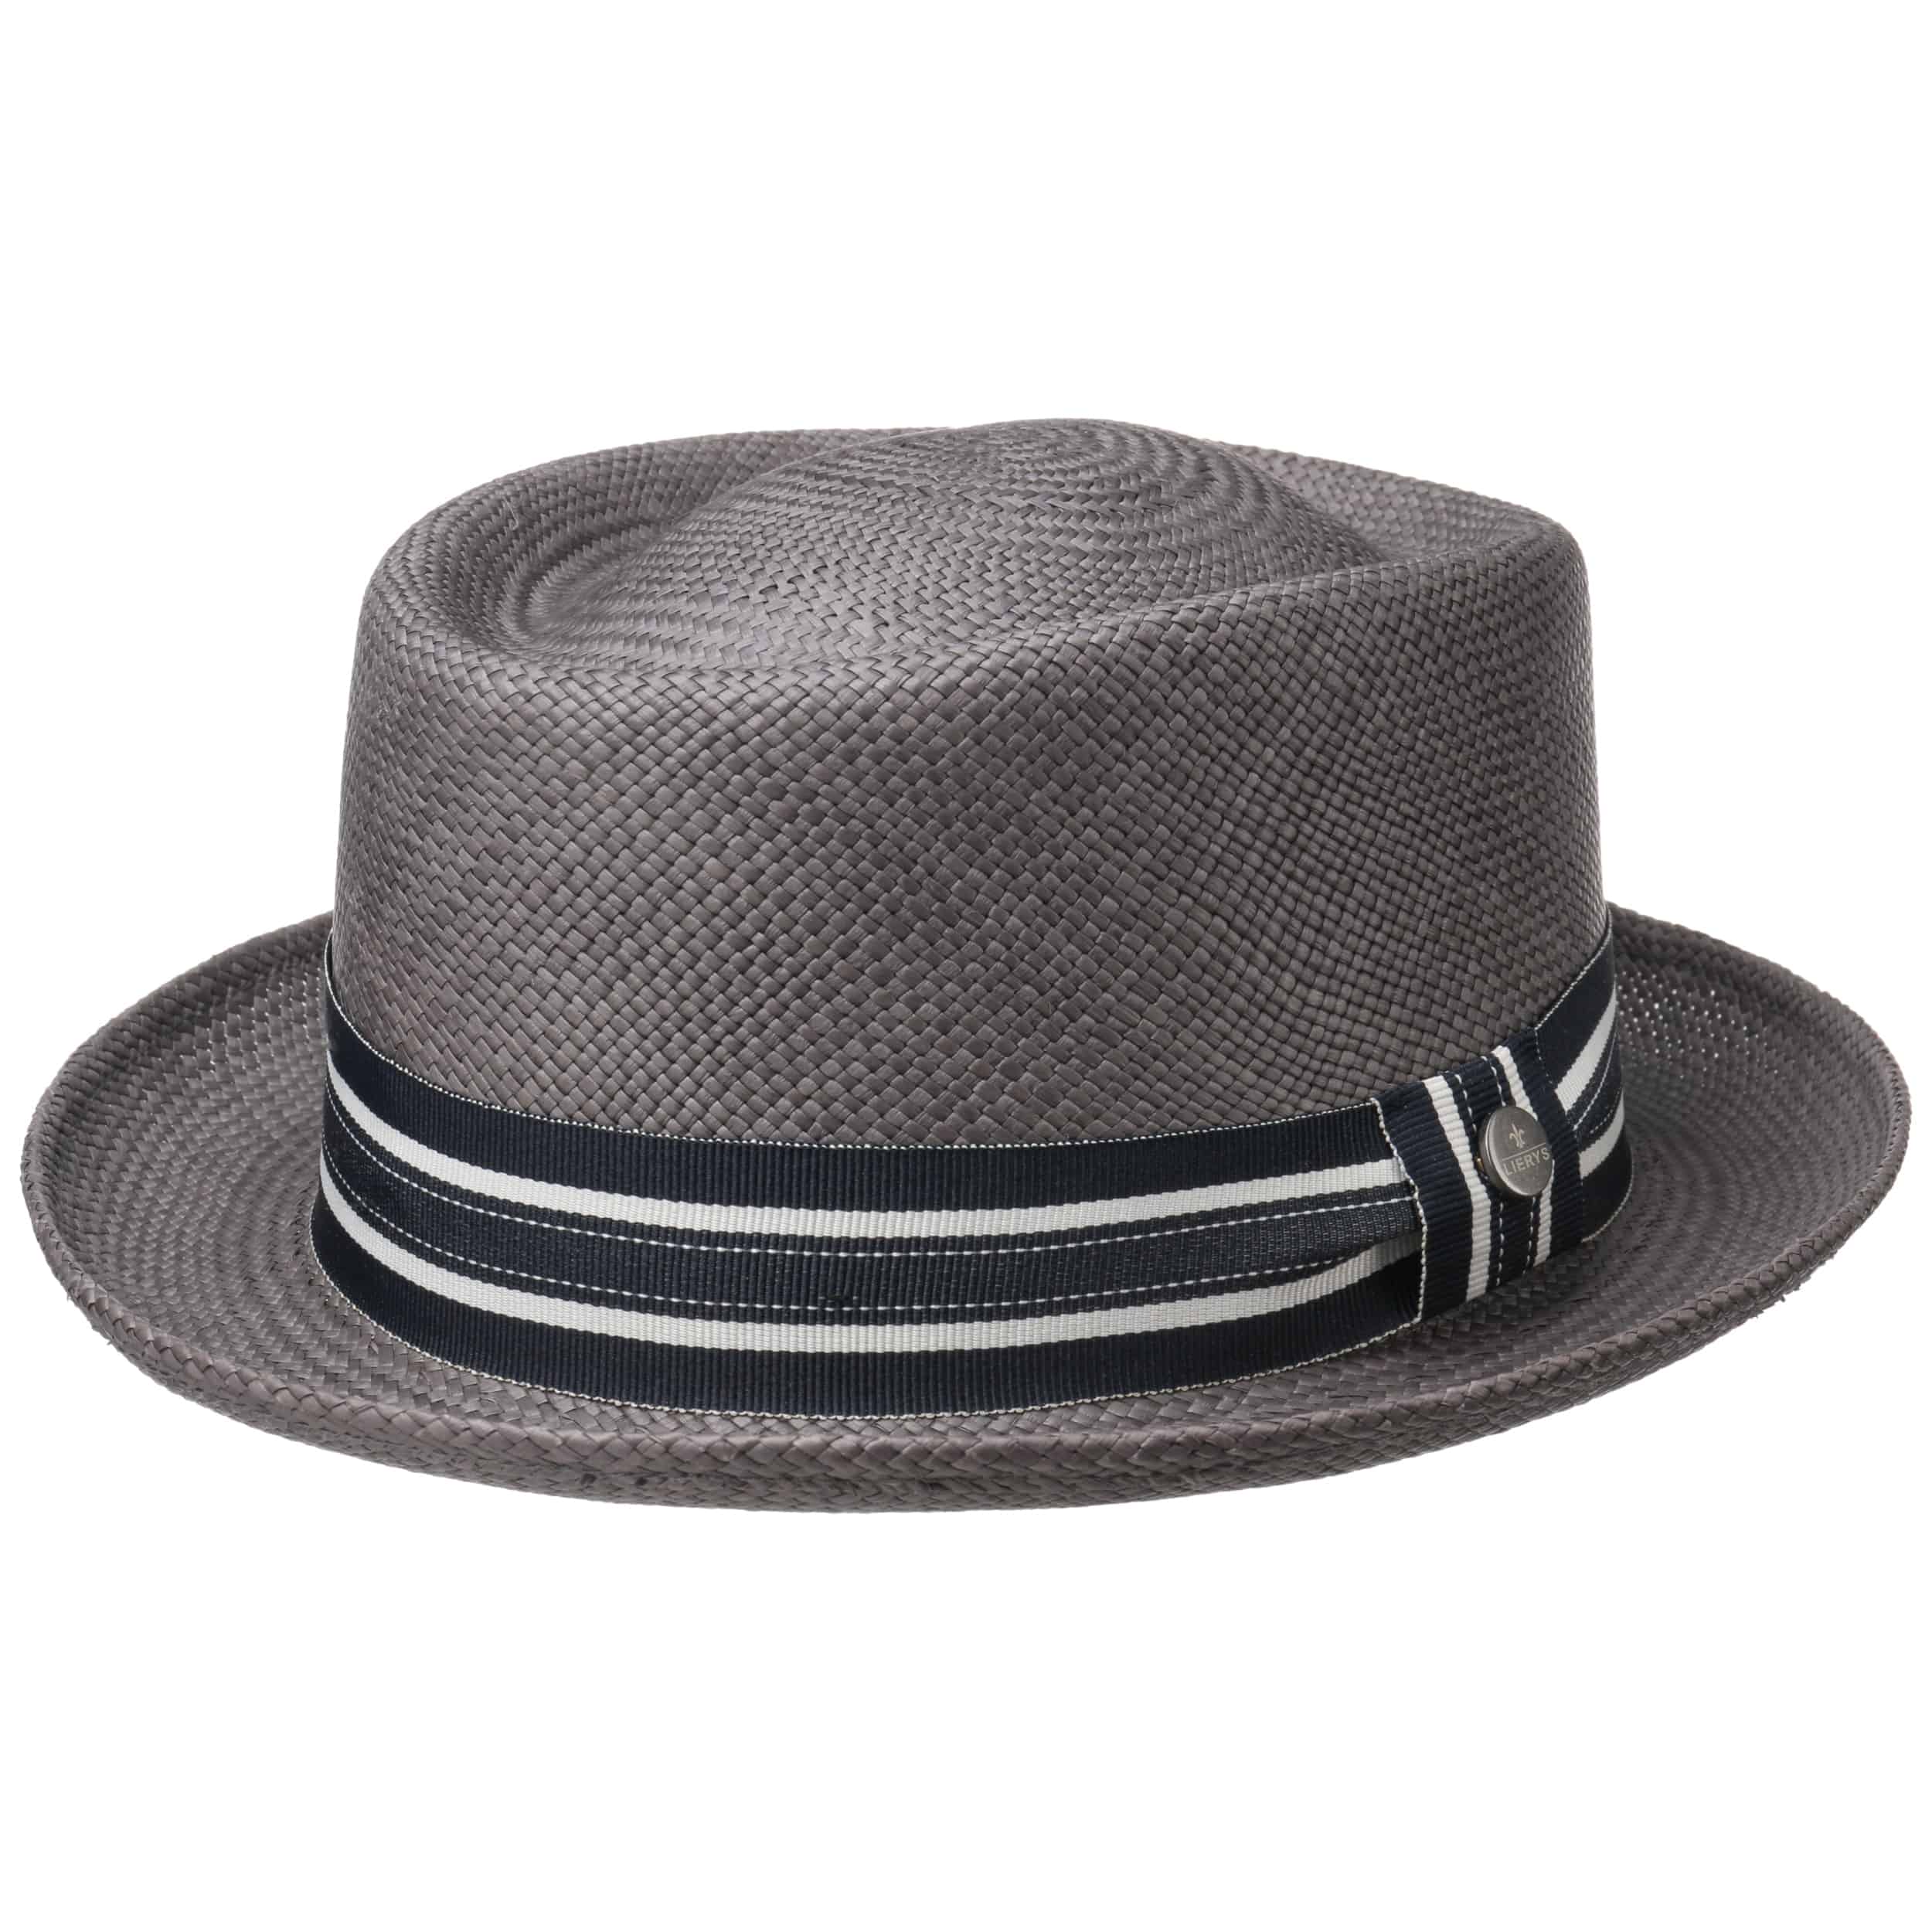 Bosano Pork Pie Panama Hat by Lierys - 134,95